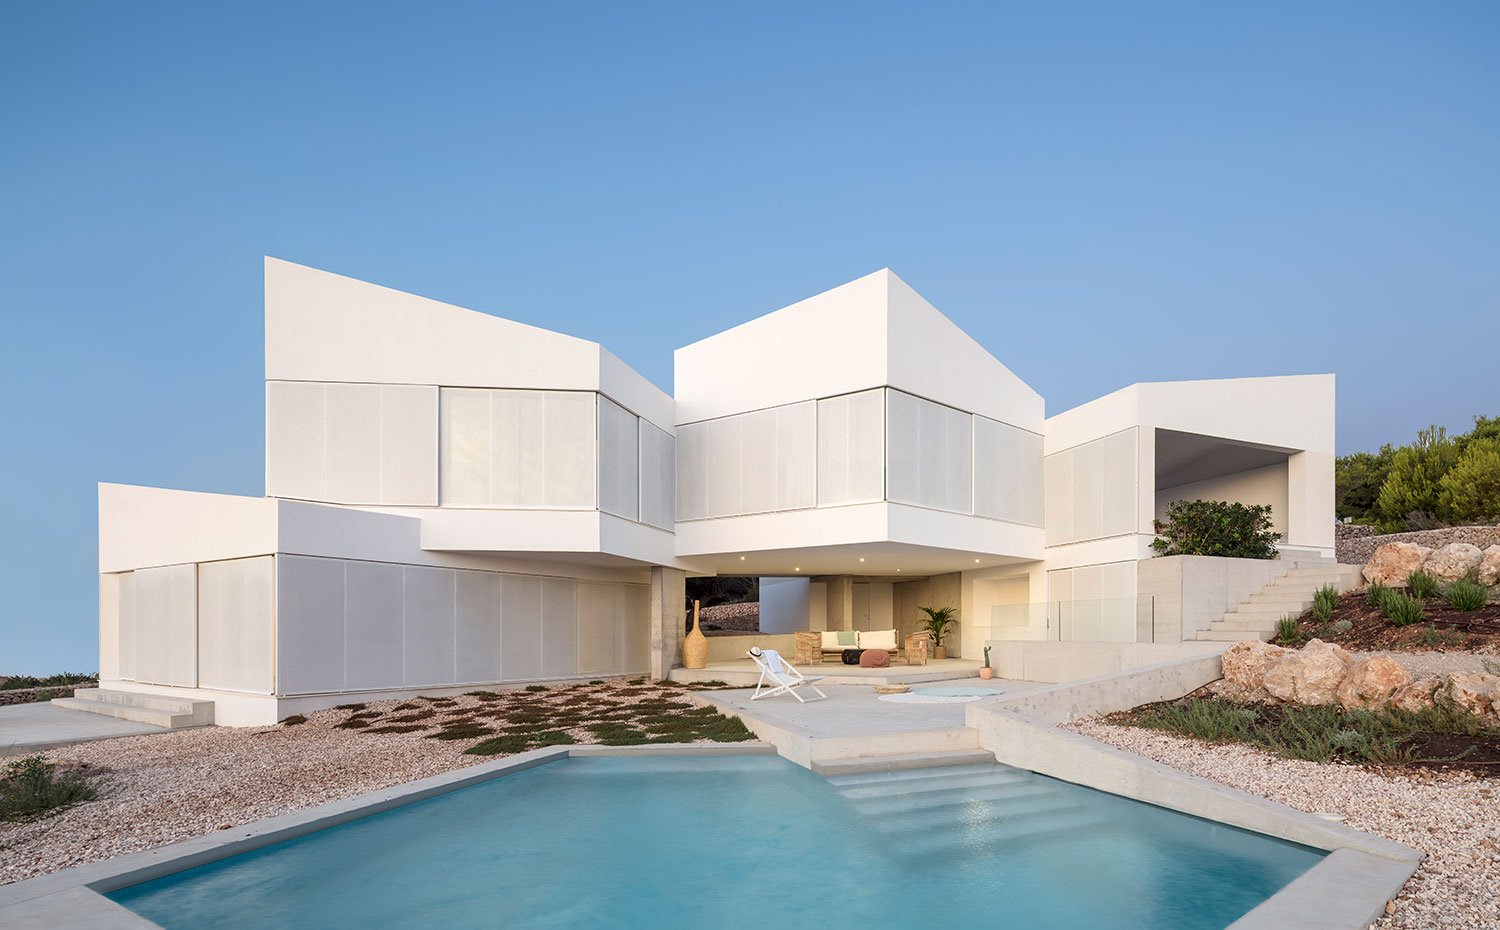 Exterior vivienda en blanco frente a piscina de formas geométricas